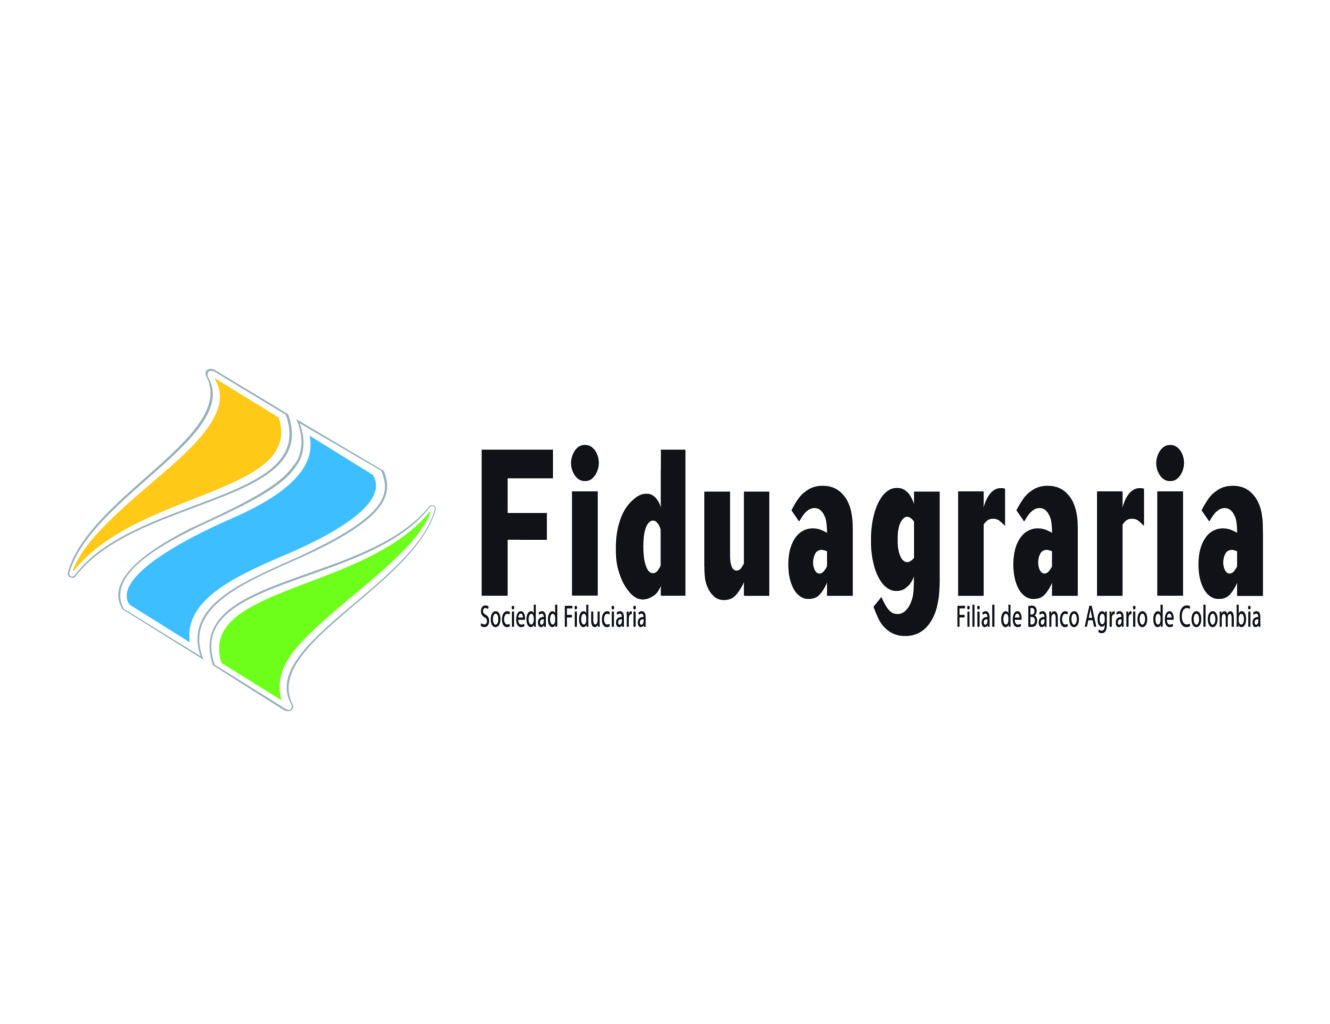 Logo fiduagraria horizontal 